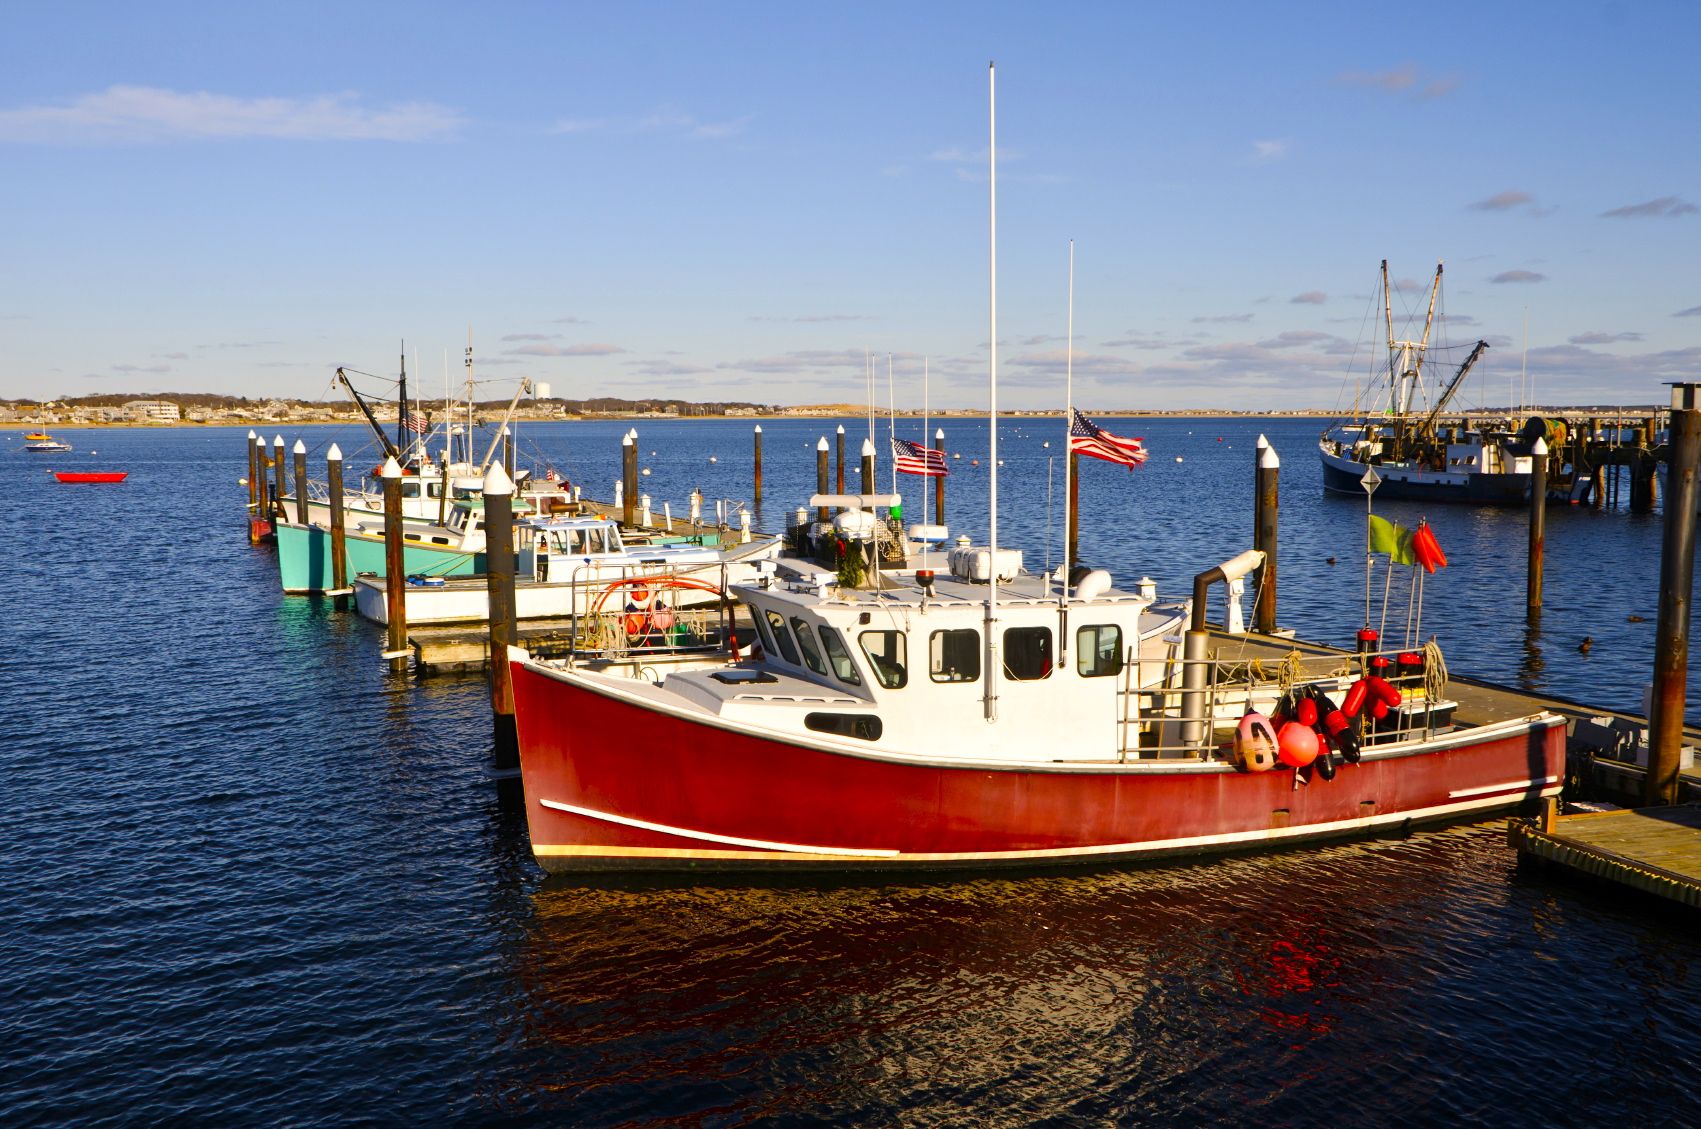 cape cod fishing boat | Cape Cod Fishing Boats | artwork | Pinterest ...